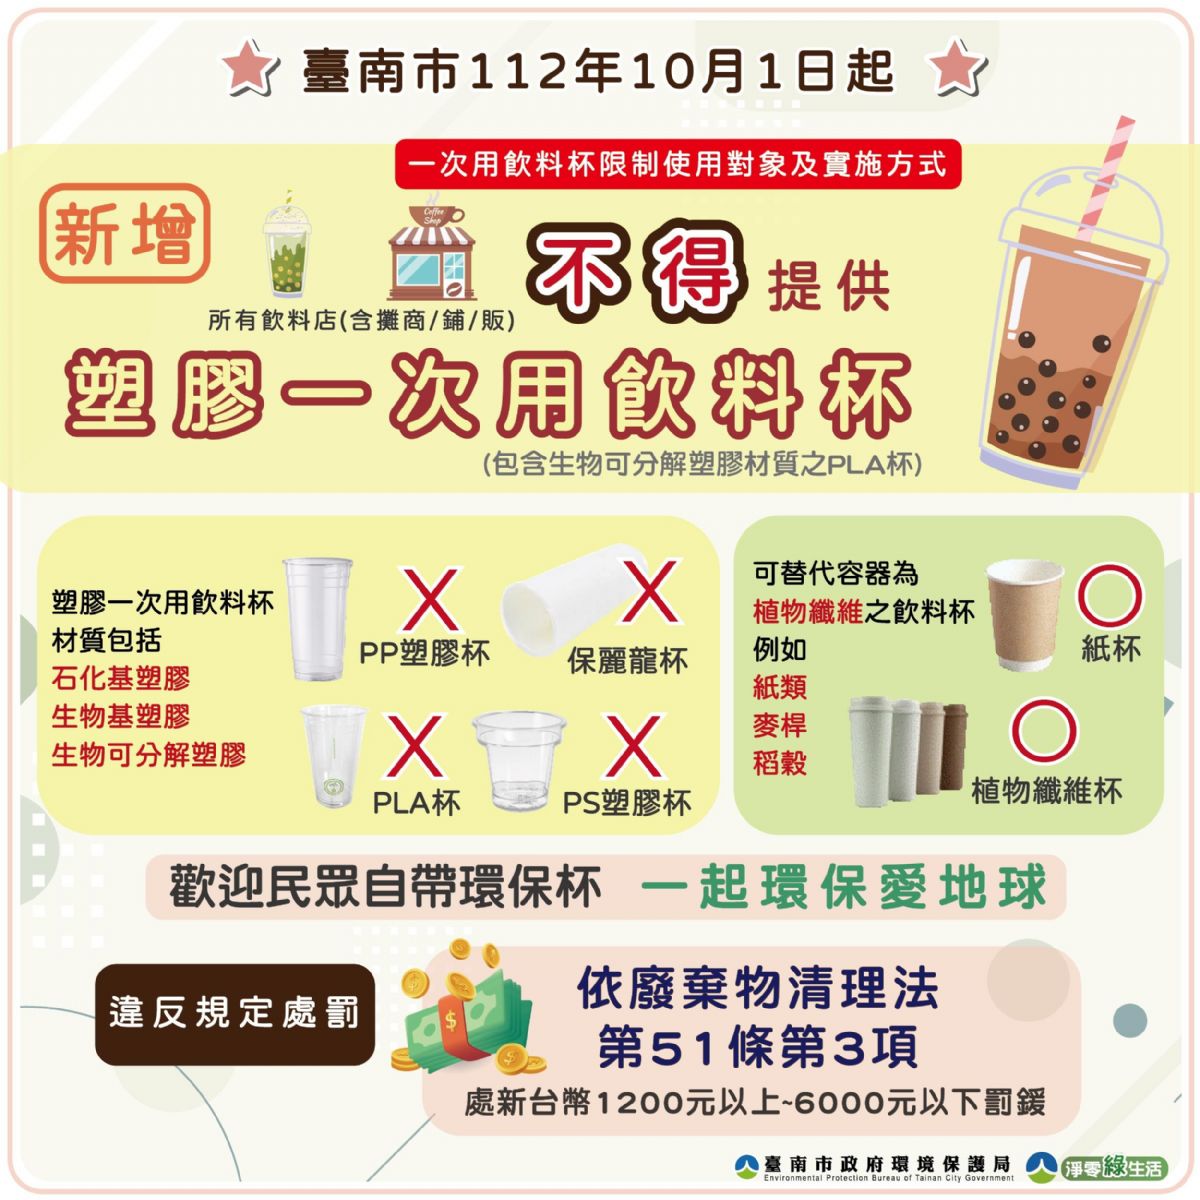 臺南市飲料店不得提供塑膠一次用飲料杯將於本(112)年10月1日正式實施